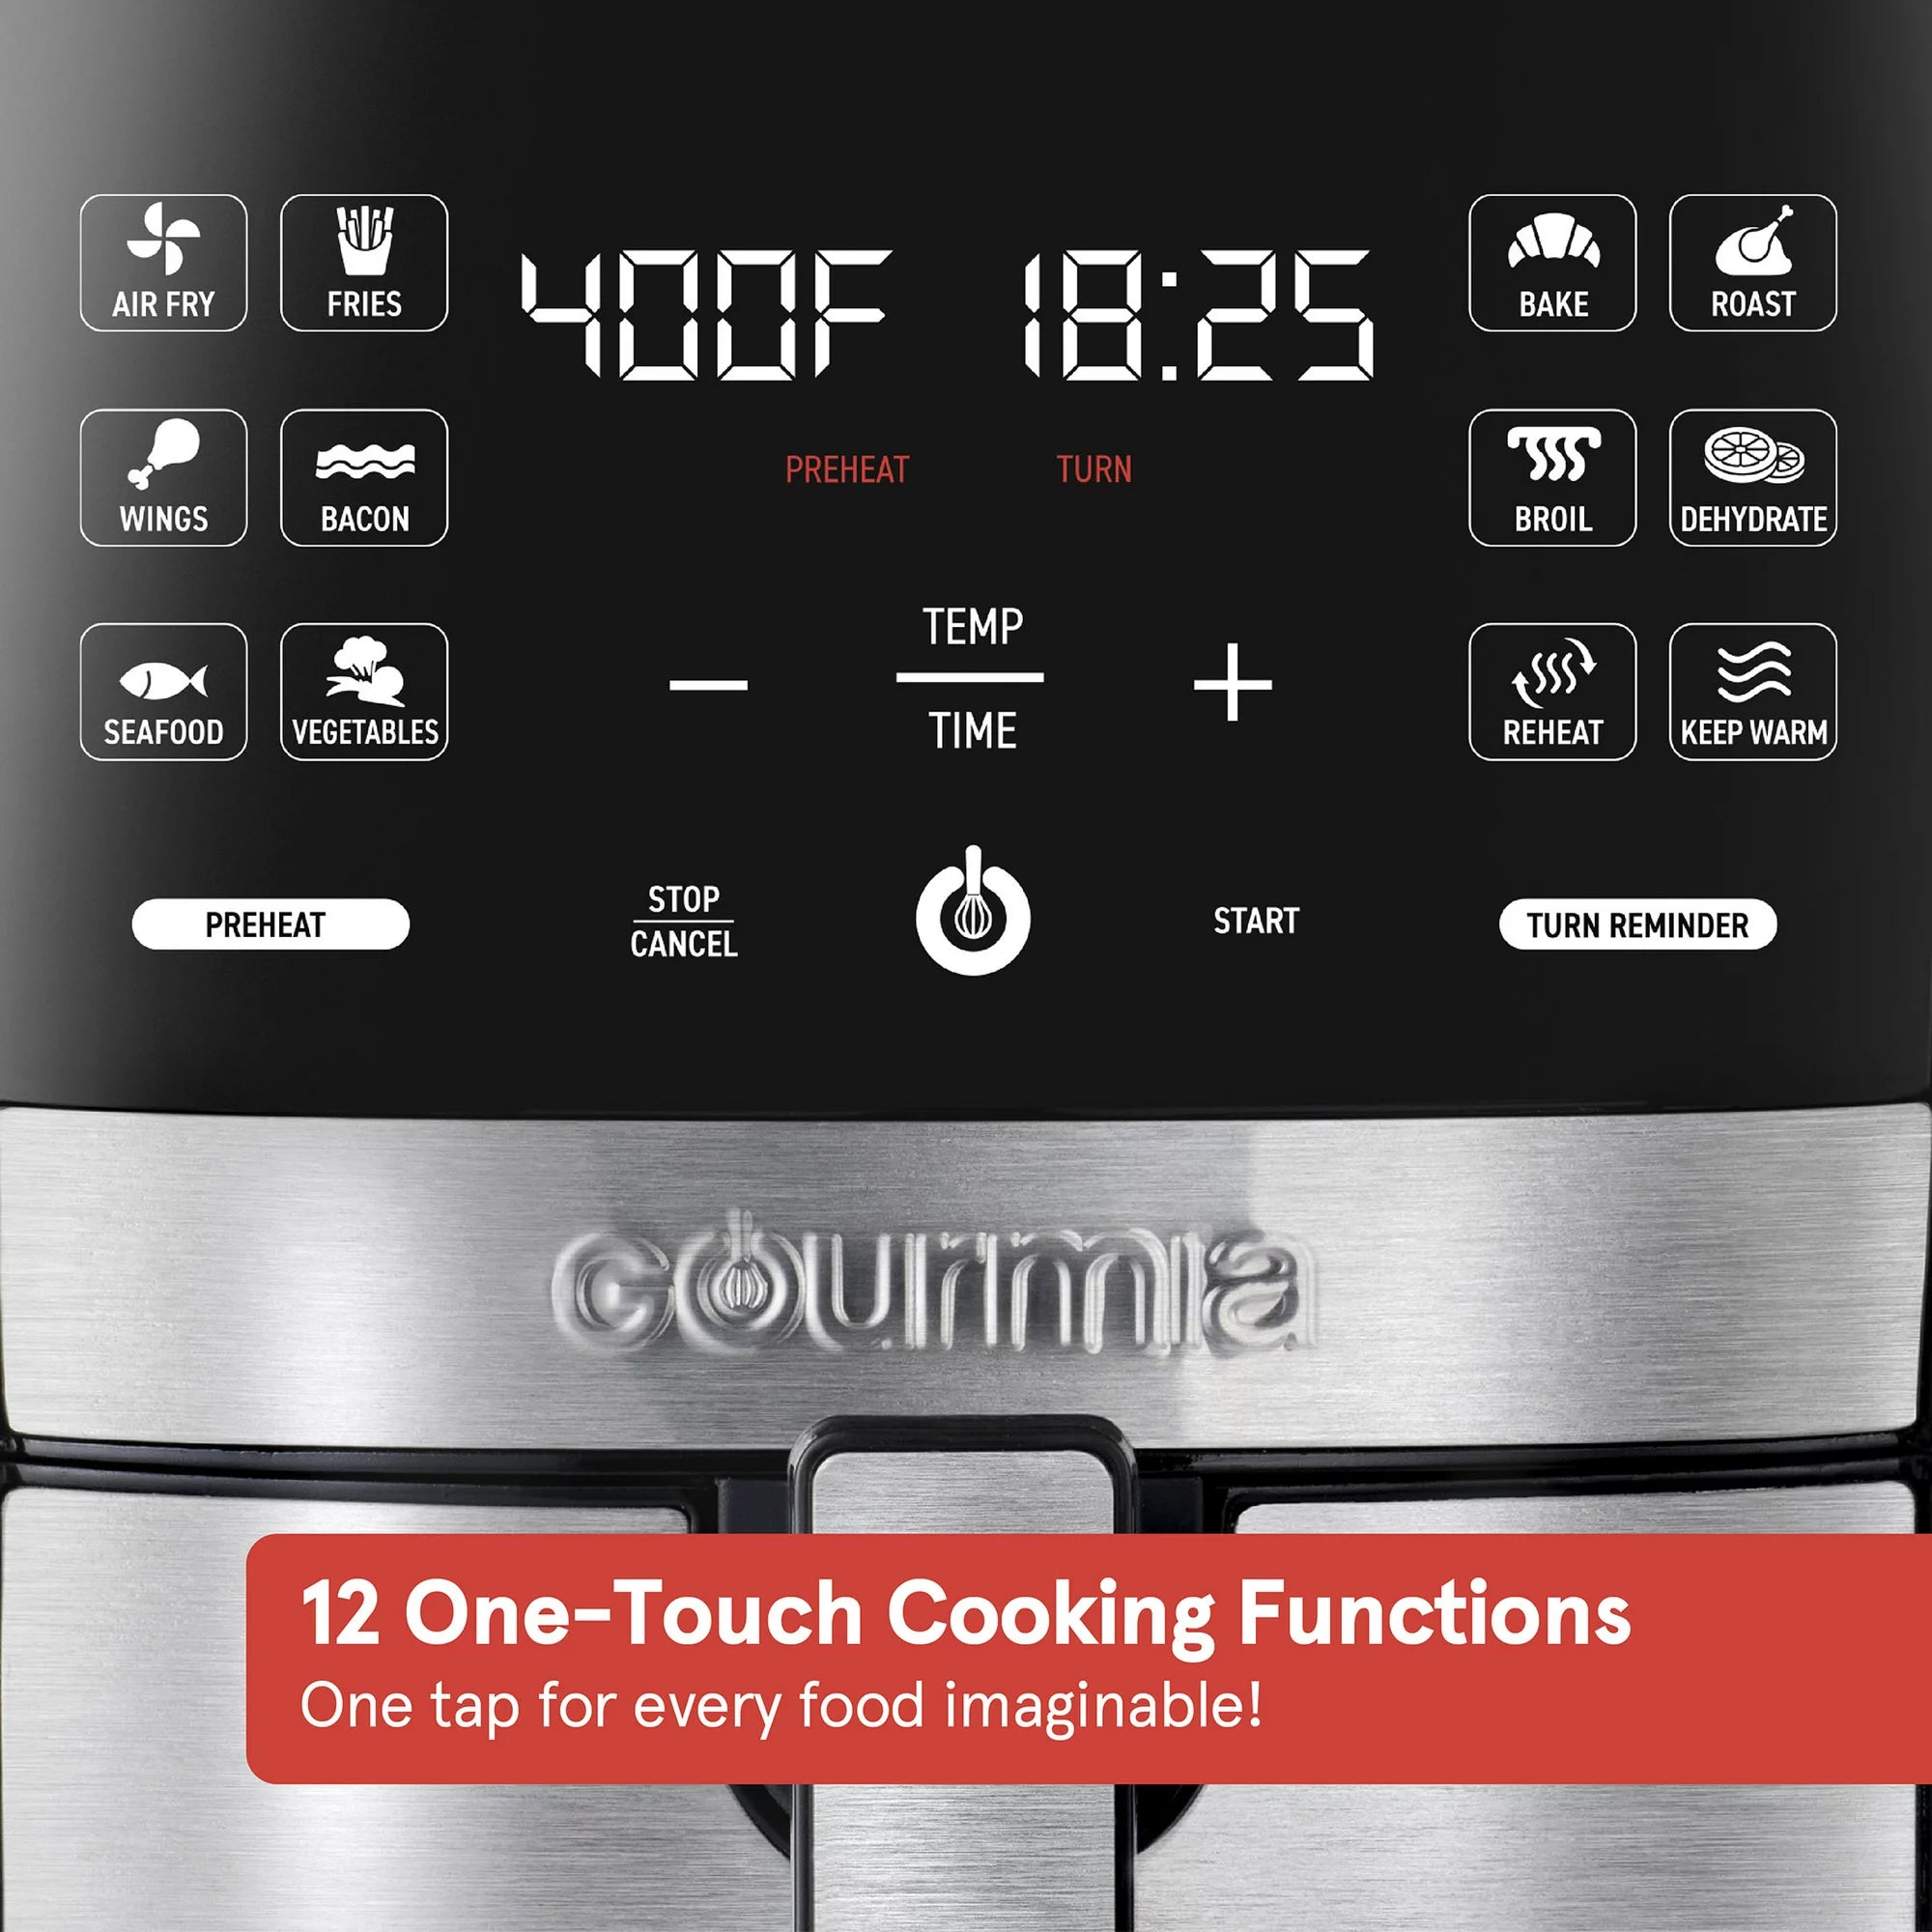 Gourmia 6 Qt Digital Air Fryer